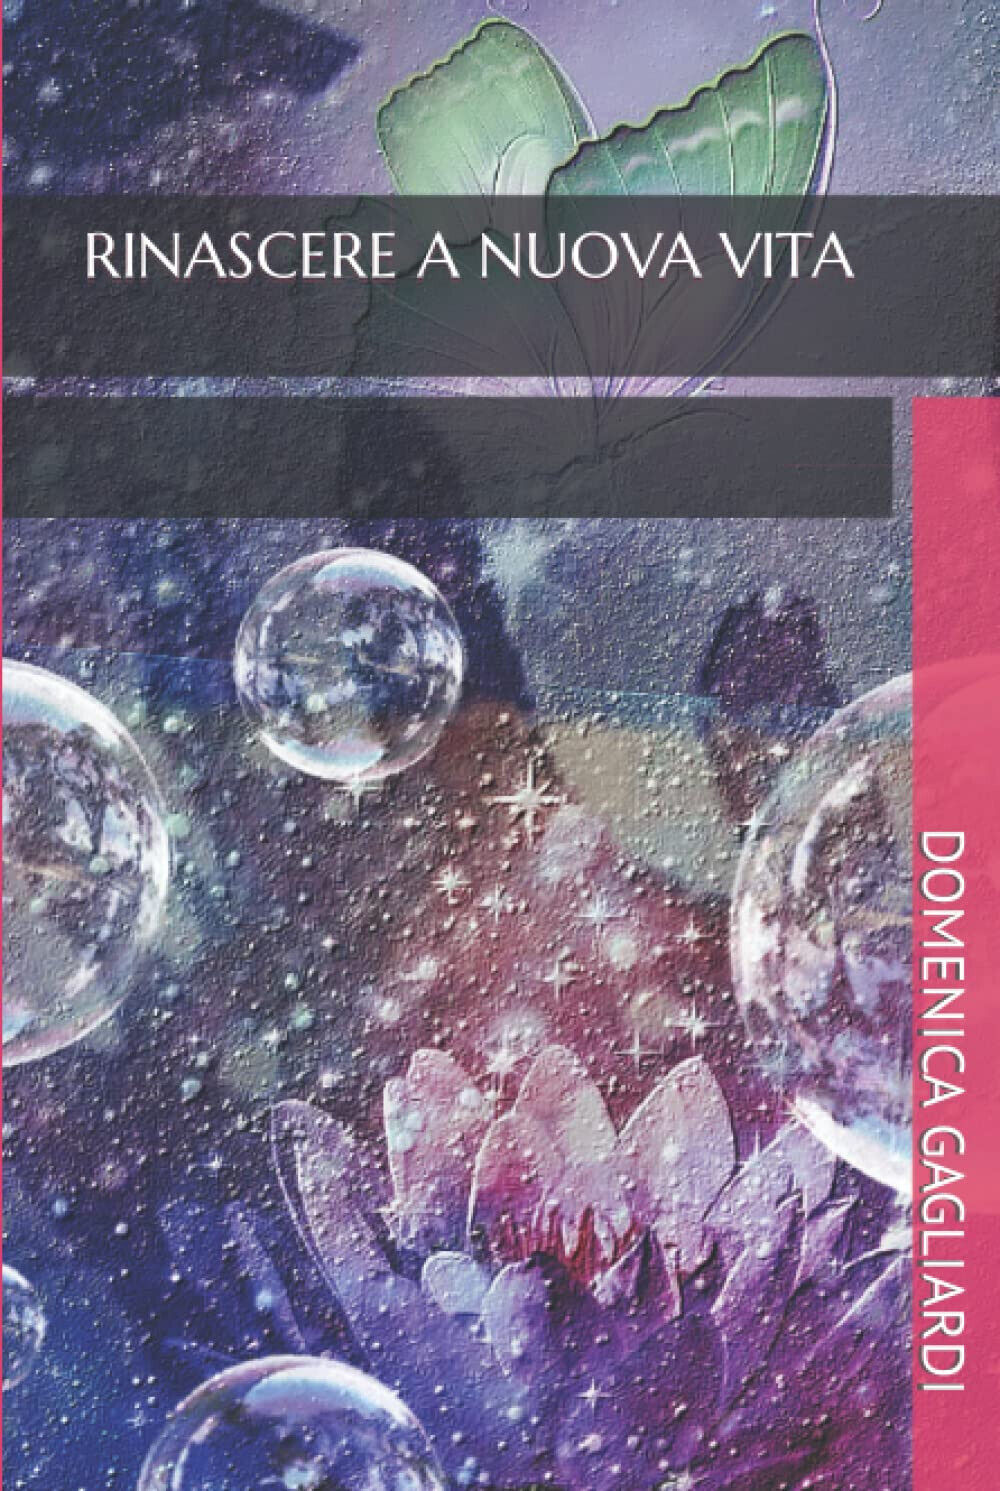 RINASCERE A NUOVA VITA - DOMENICA GAGLIARDI - Independently, 2021